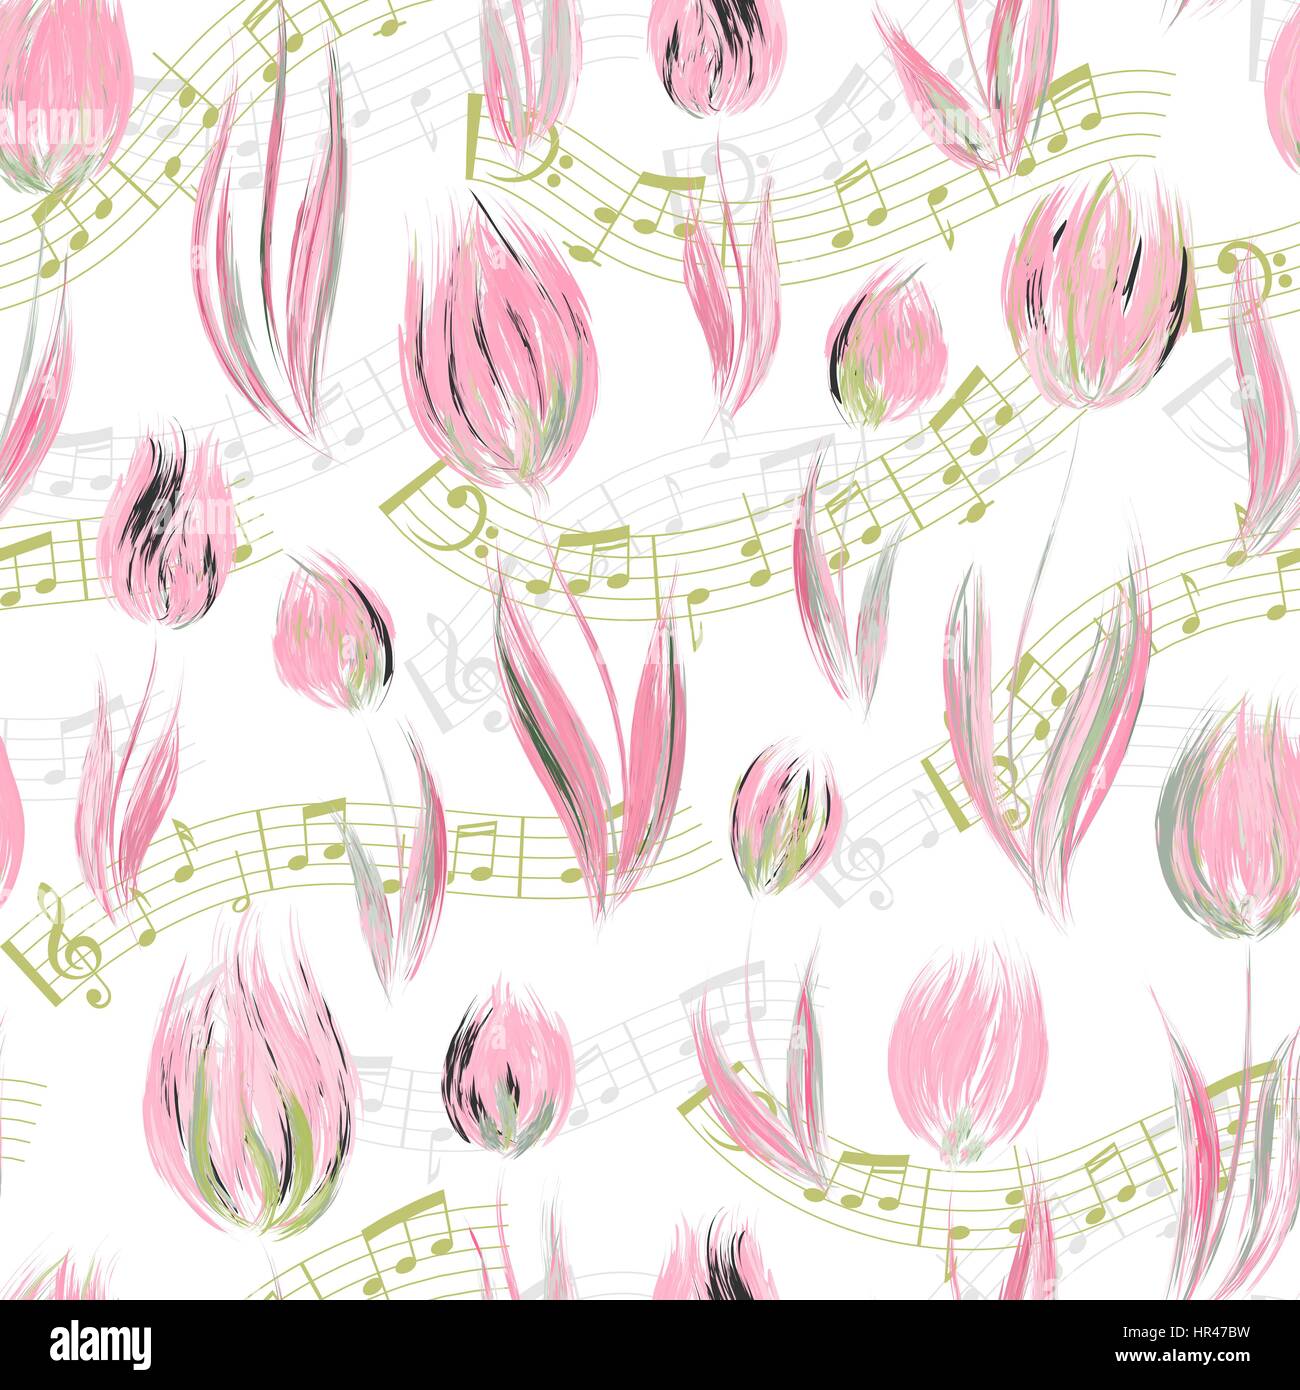 Motif transparent brillant avec de l'huile peint fleurs tulipes roses délicates notes de fin, éléments de design. Motif floral pour les invitations de mariage, carte de souhaits Illustration de Vecteur